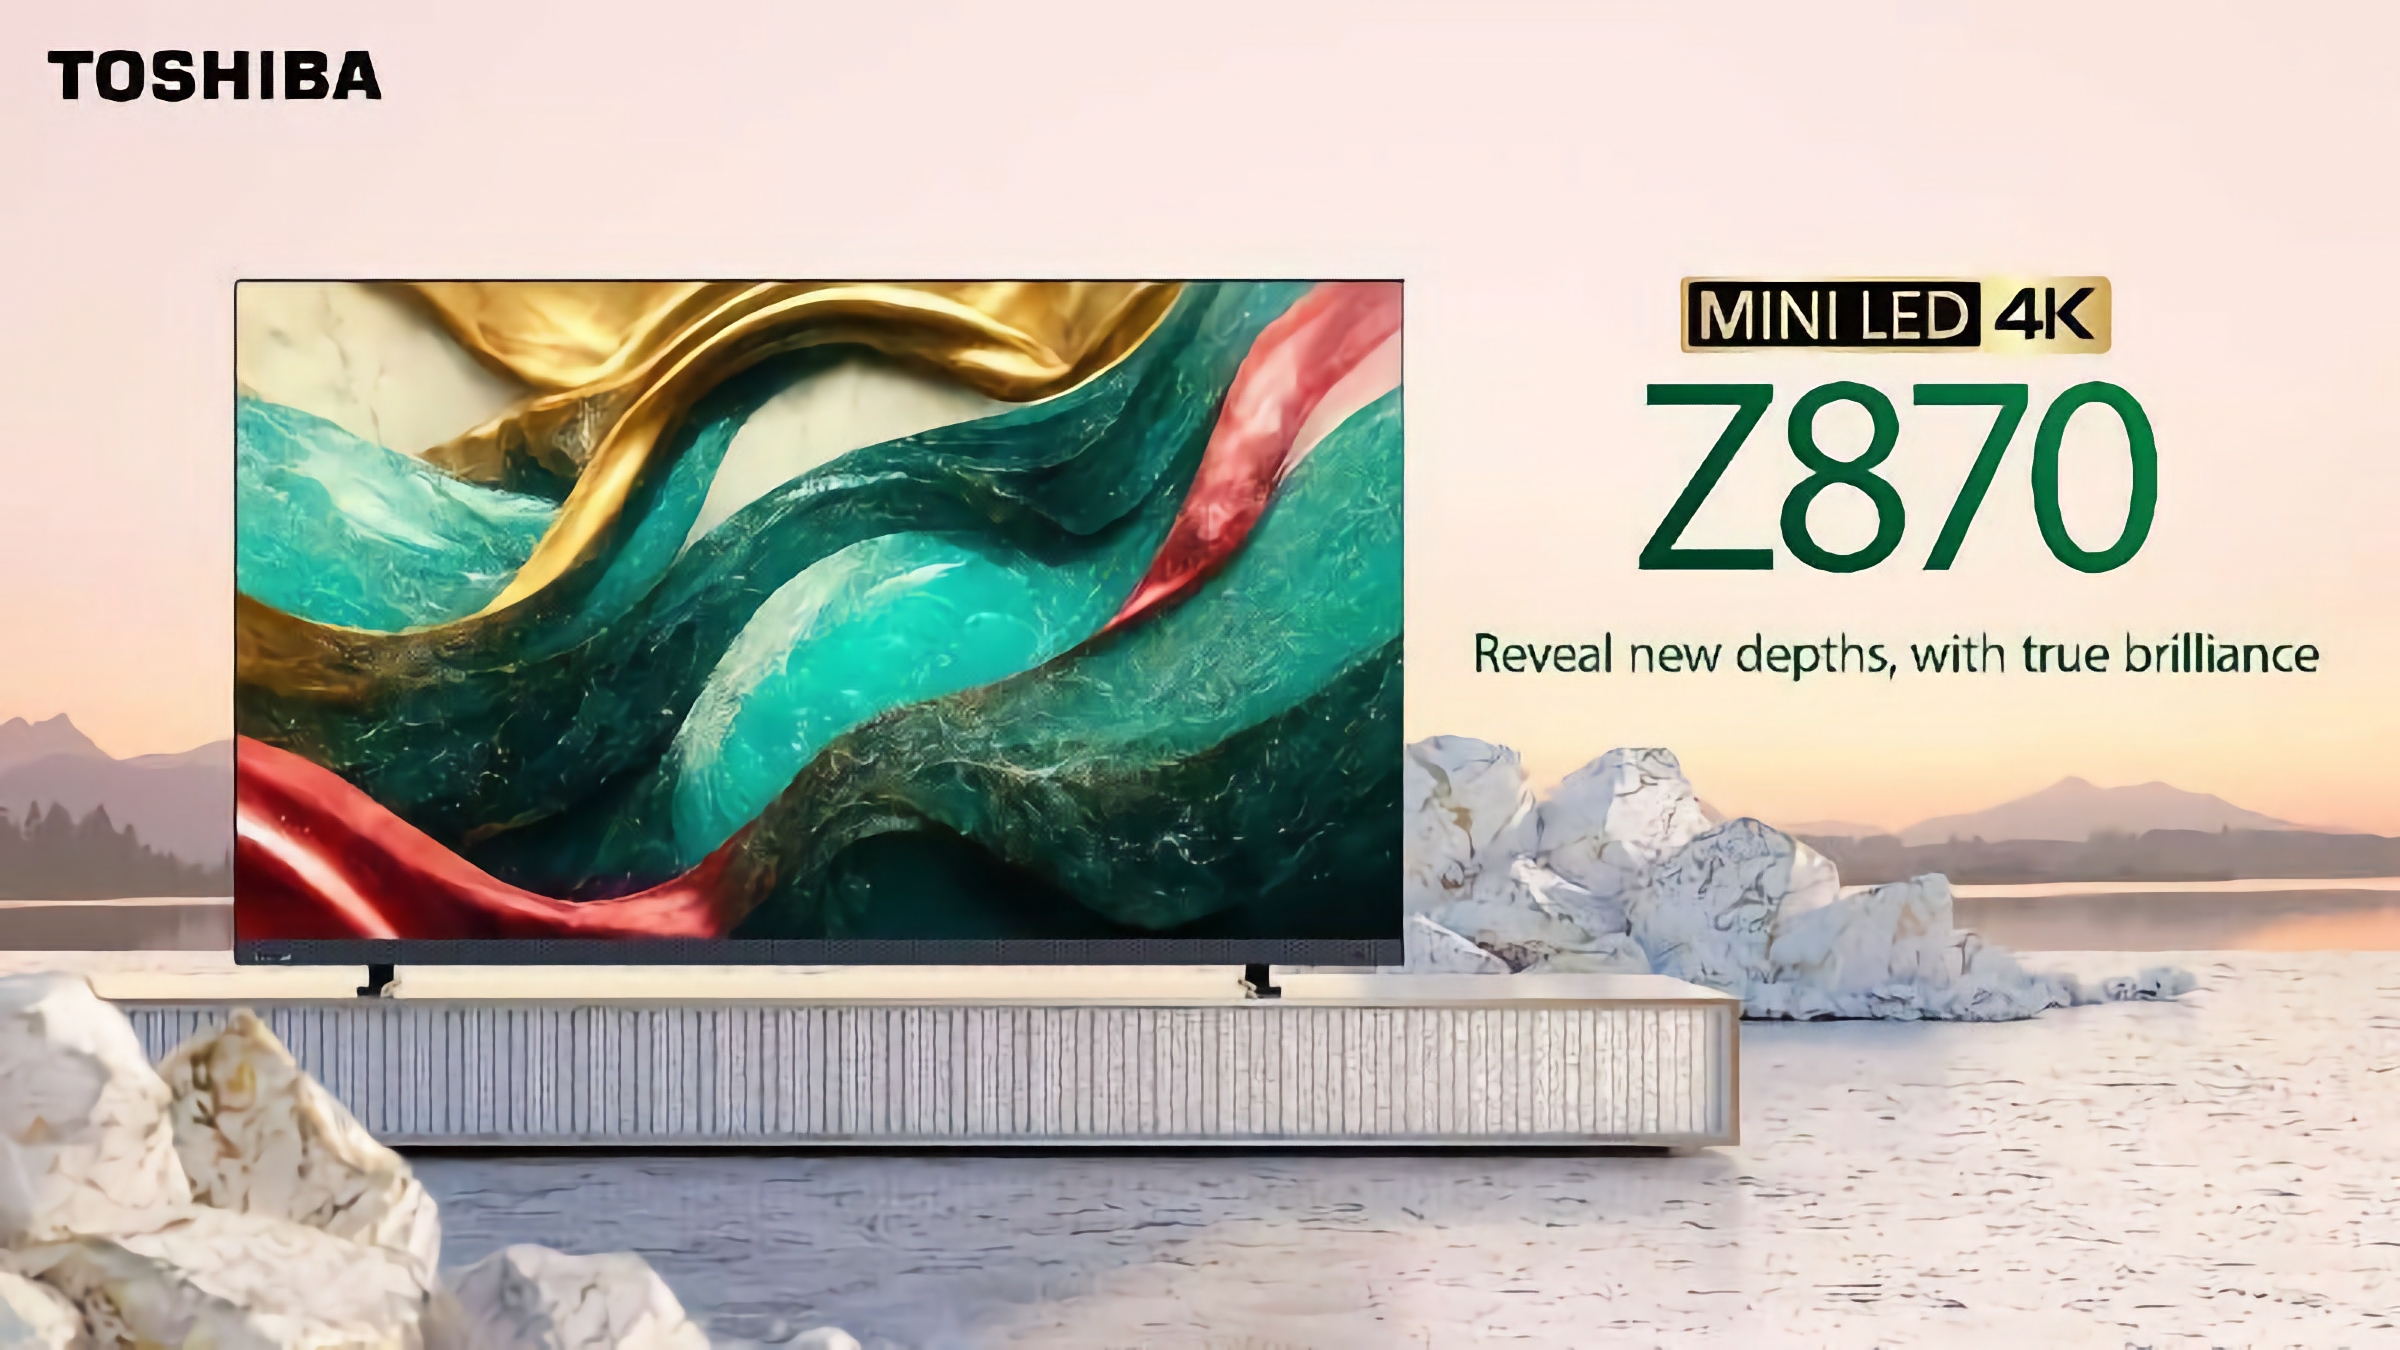 Toshiba Z870 MiniLED 4K Gaming TV : Une gamme gaming de téléviseurs intelligents avec prise en charge de 144Hz et technologie AMD FreeSync.